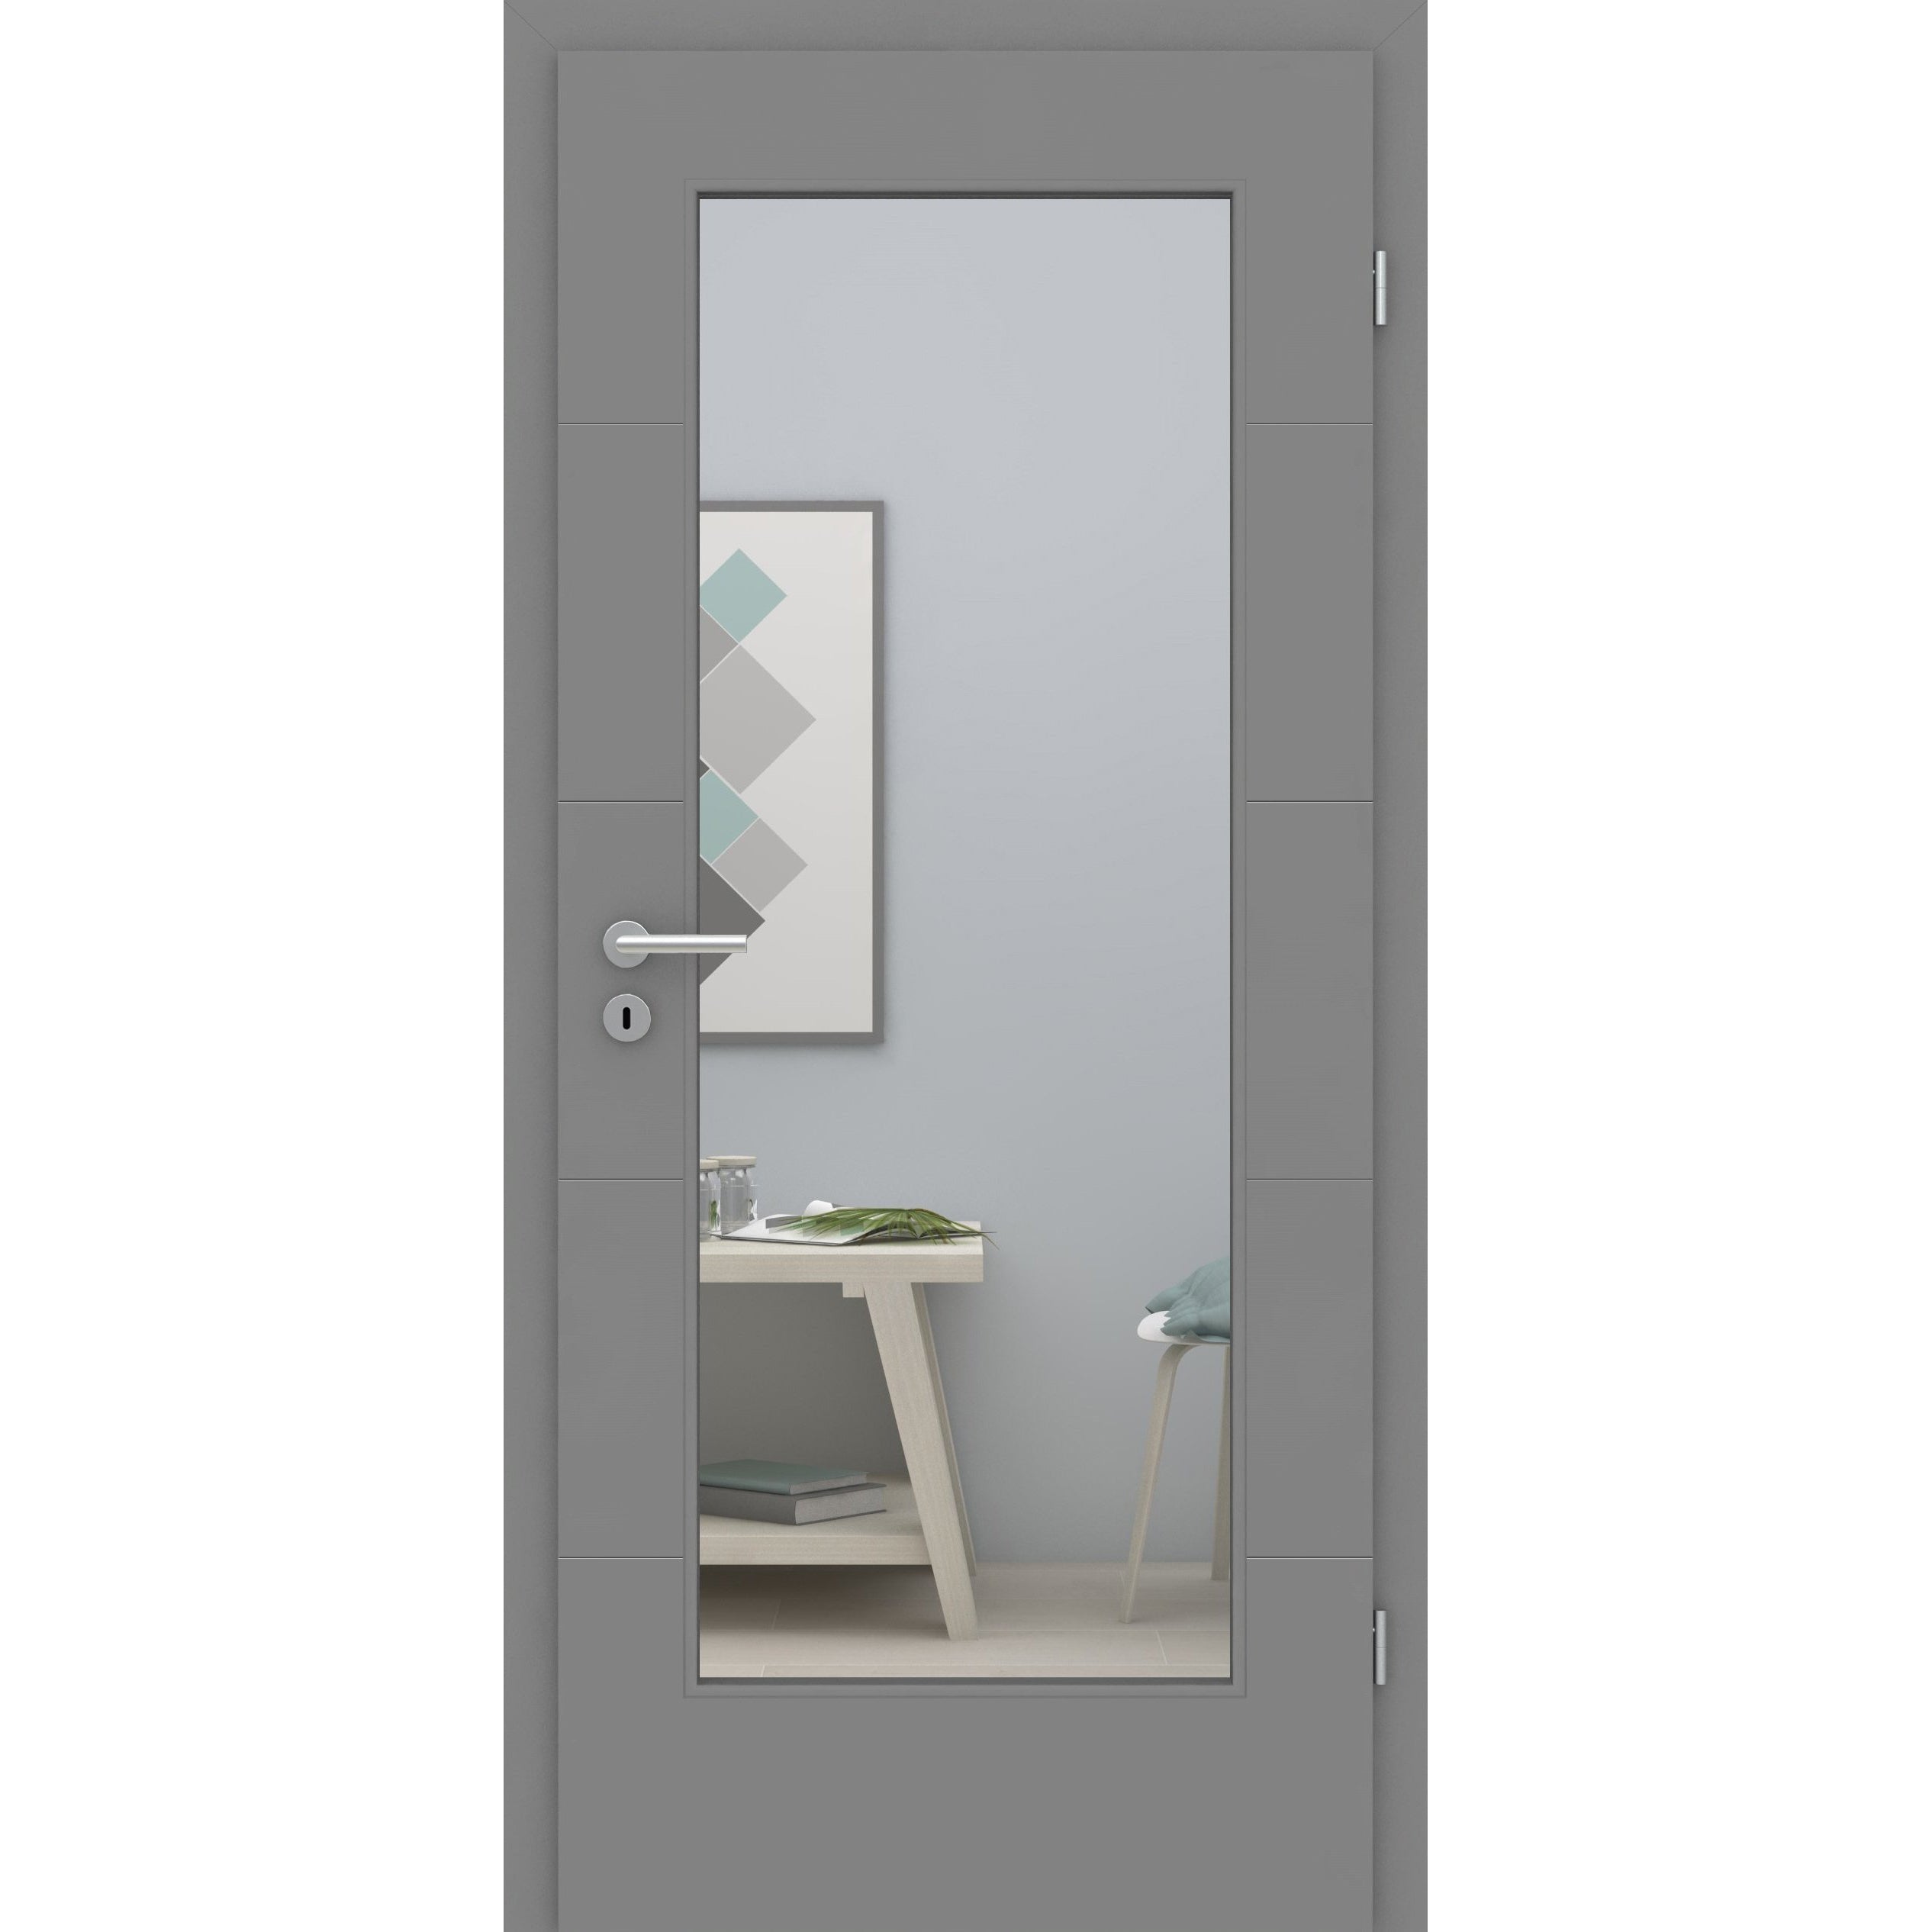 Zimmertür mit Zarge und Lichtausschnitt grau 4 Rillen quer Designkante - Modell Designtür Q47LA